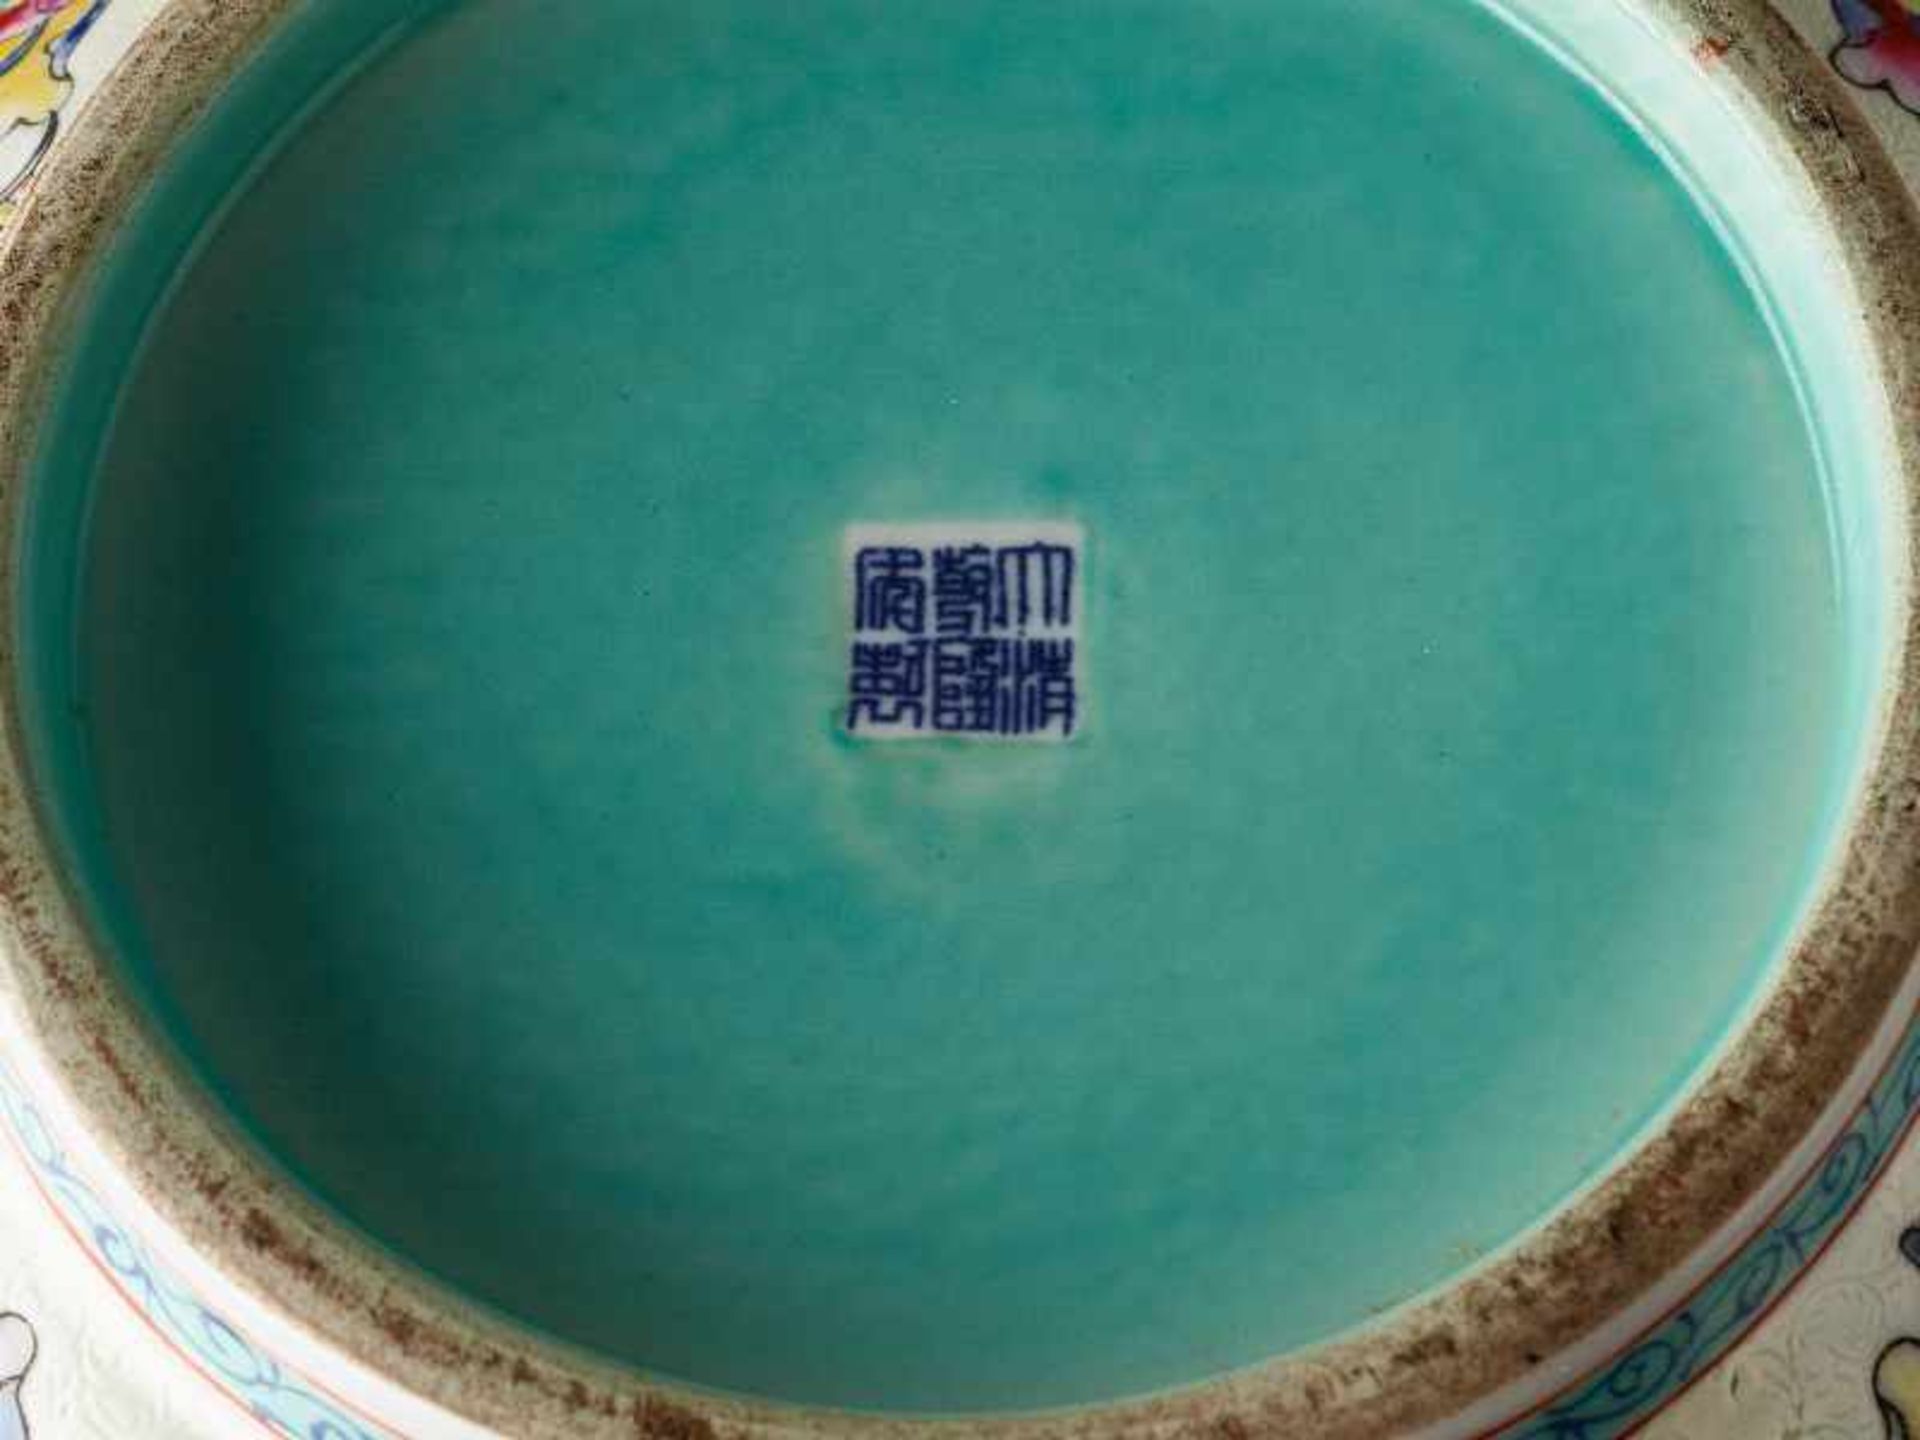 GROSSE SCHALEPorzellan mit Emailfarben. China, voriges Jh.Sechszeichenmarke in Siegelschrift Da Qing - Image 4 of 9